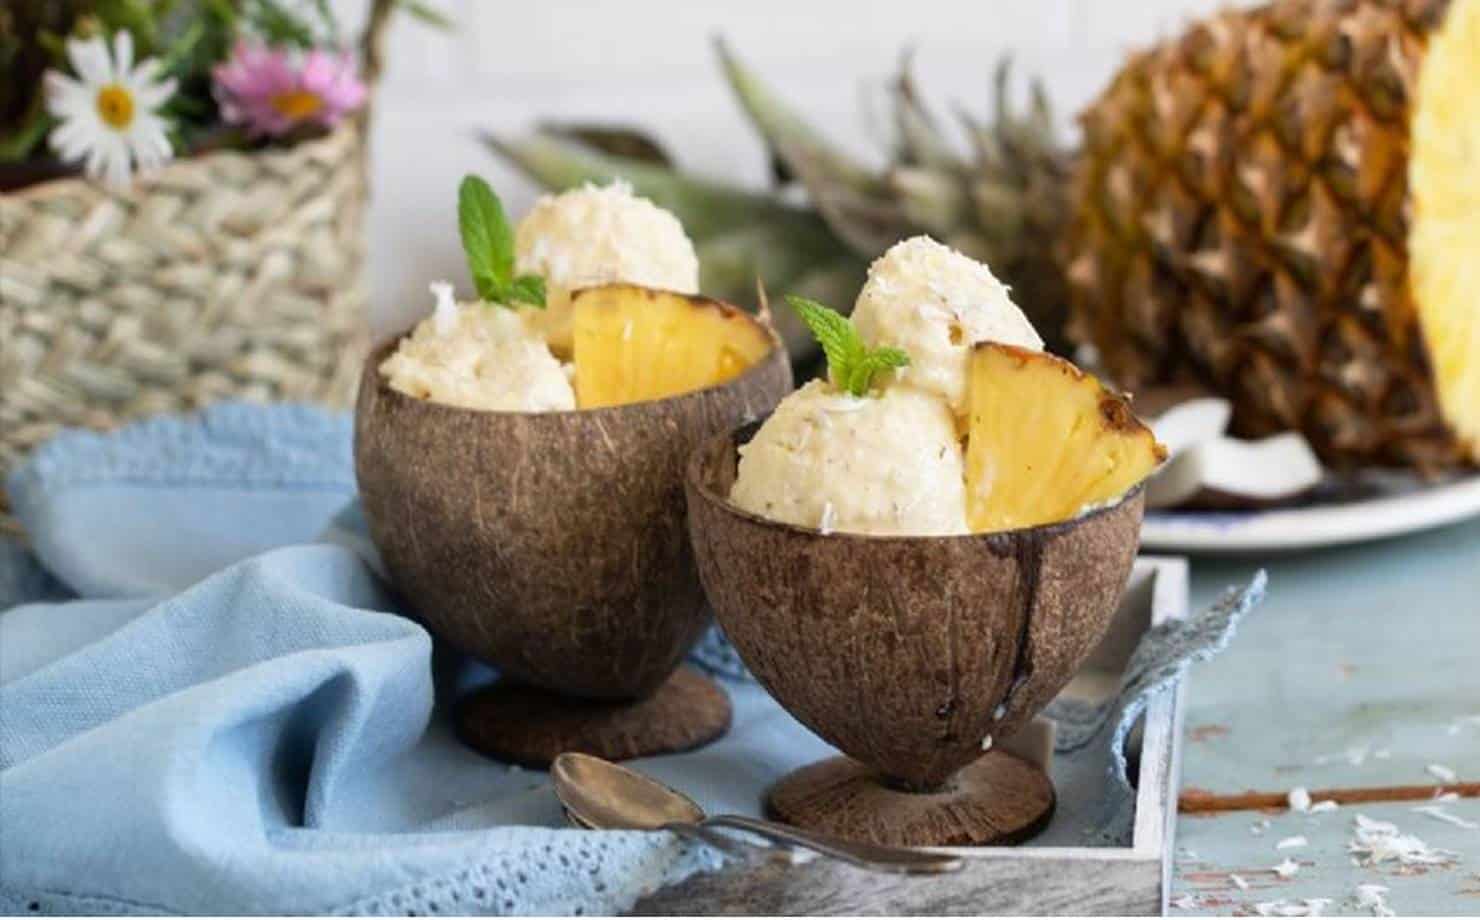 Sorvete de abacaxi em taças feitas com casca de coco